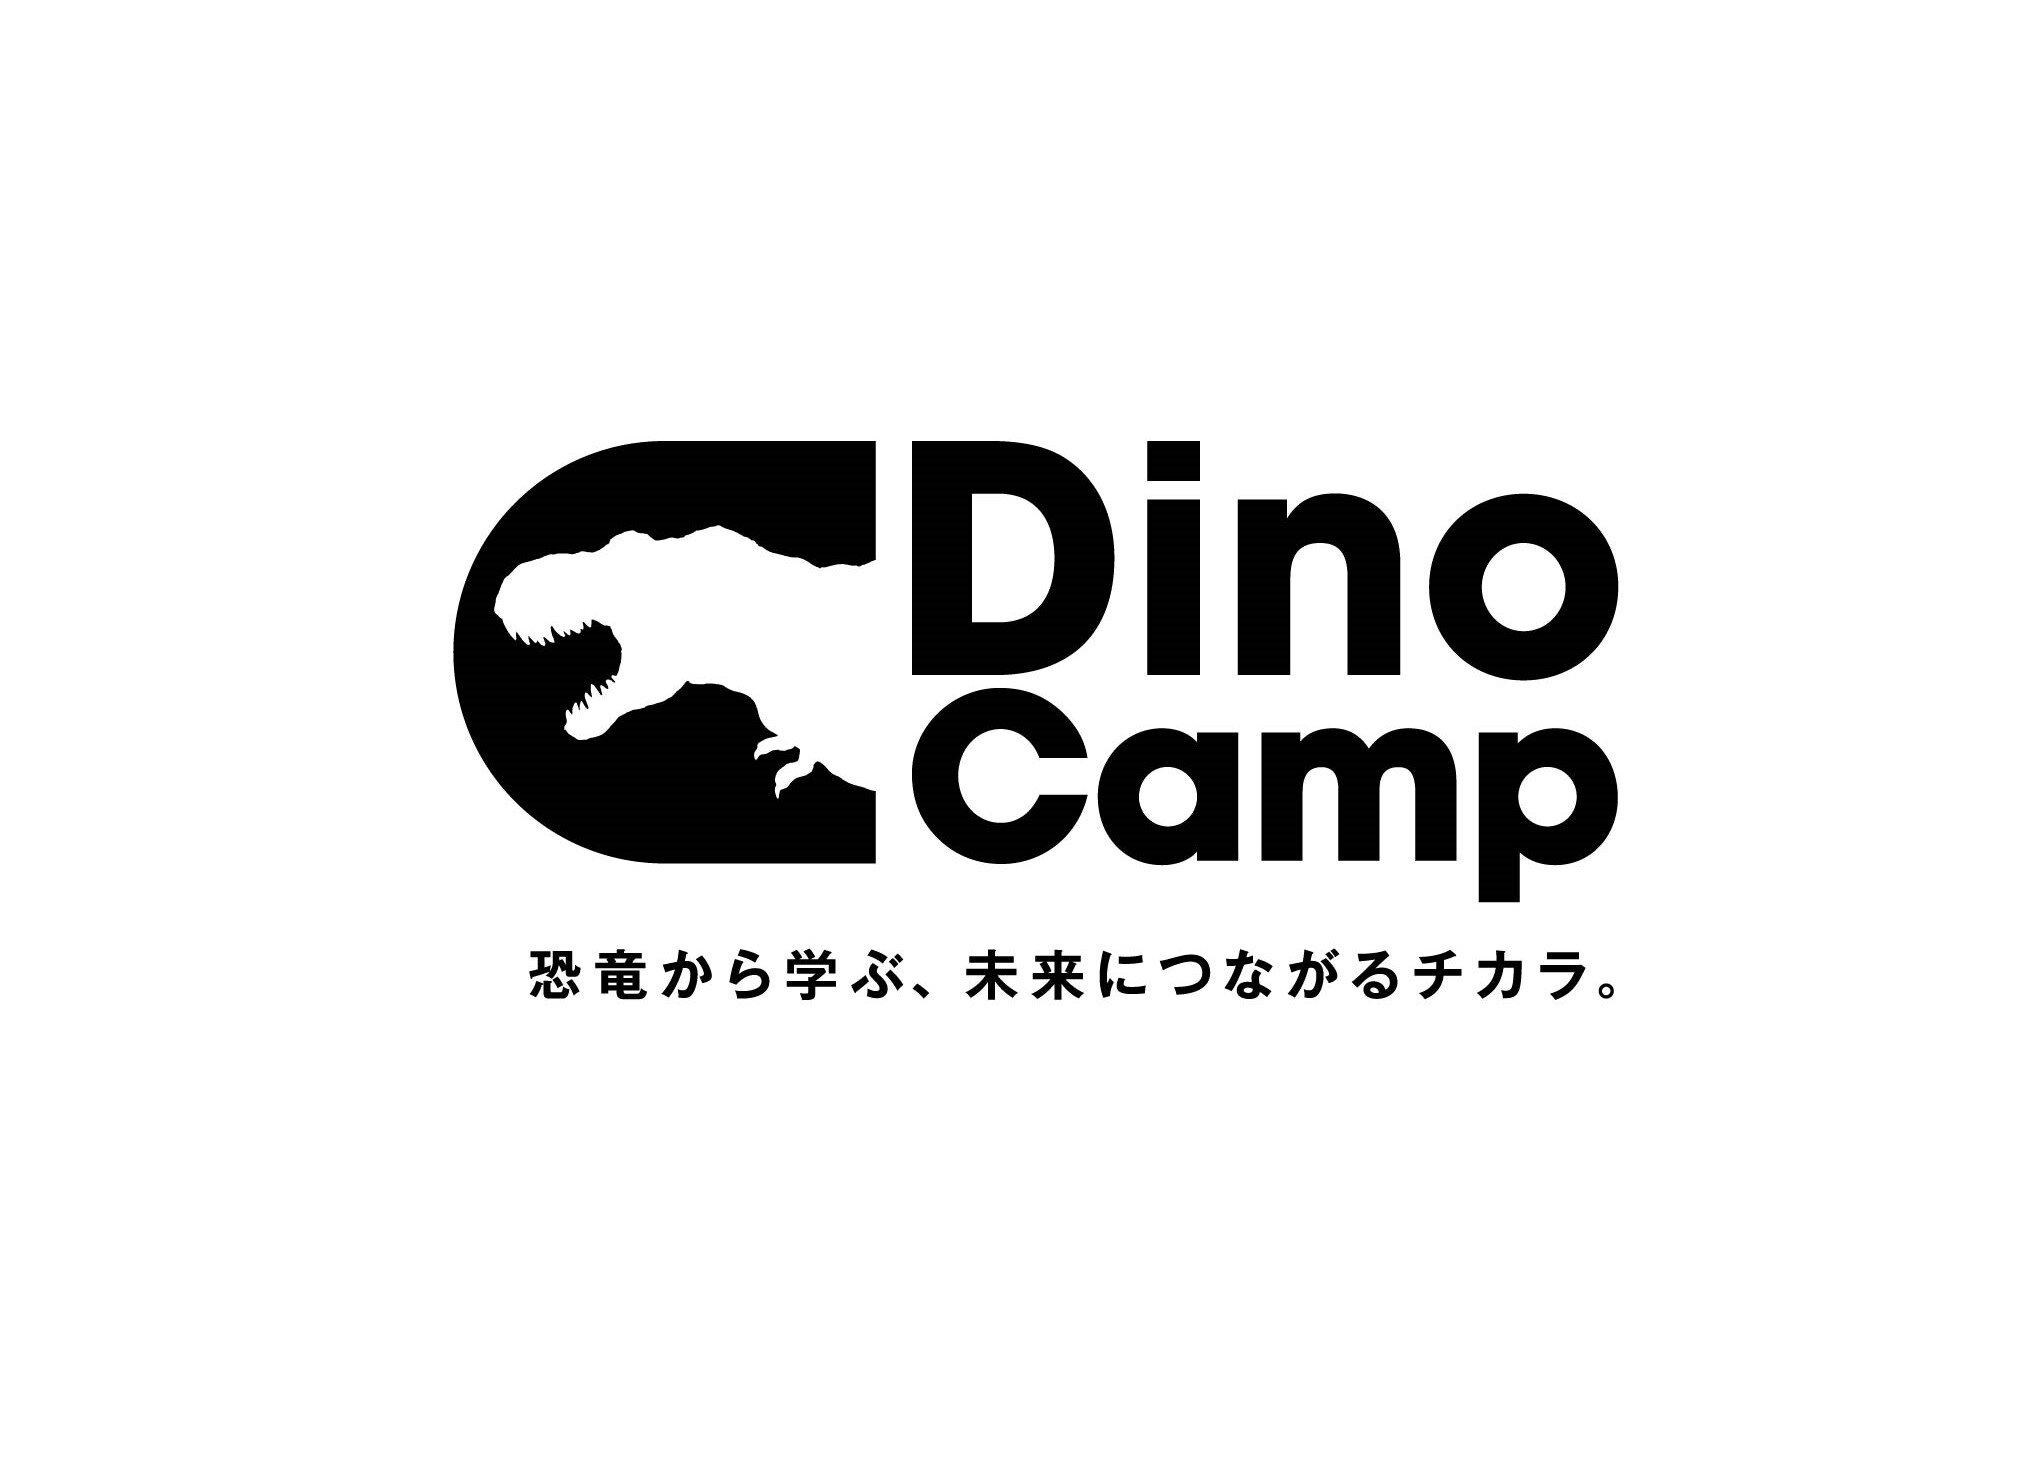 恐竜をテーマとした子ども向けワークショップ型イベント『Dino Camp』が、「OUTDOOR FRONT」に出展